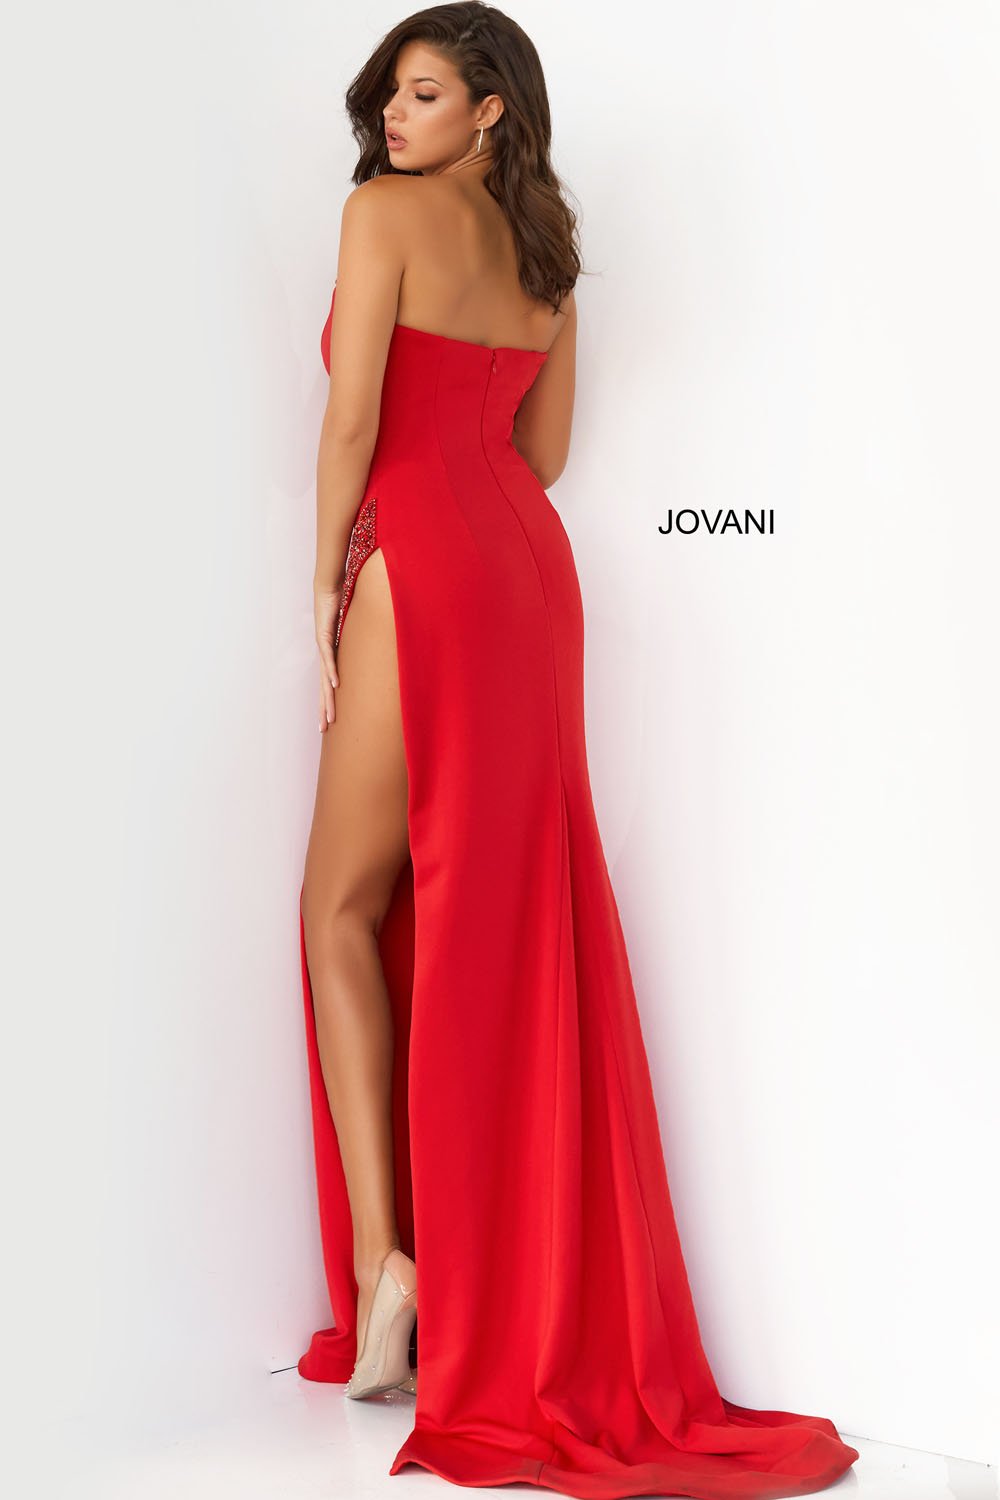 Jovani 07138 Dress | Jovani Dresses ...